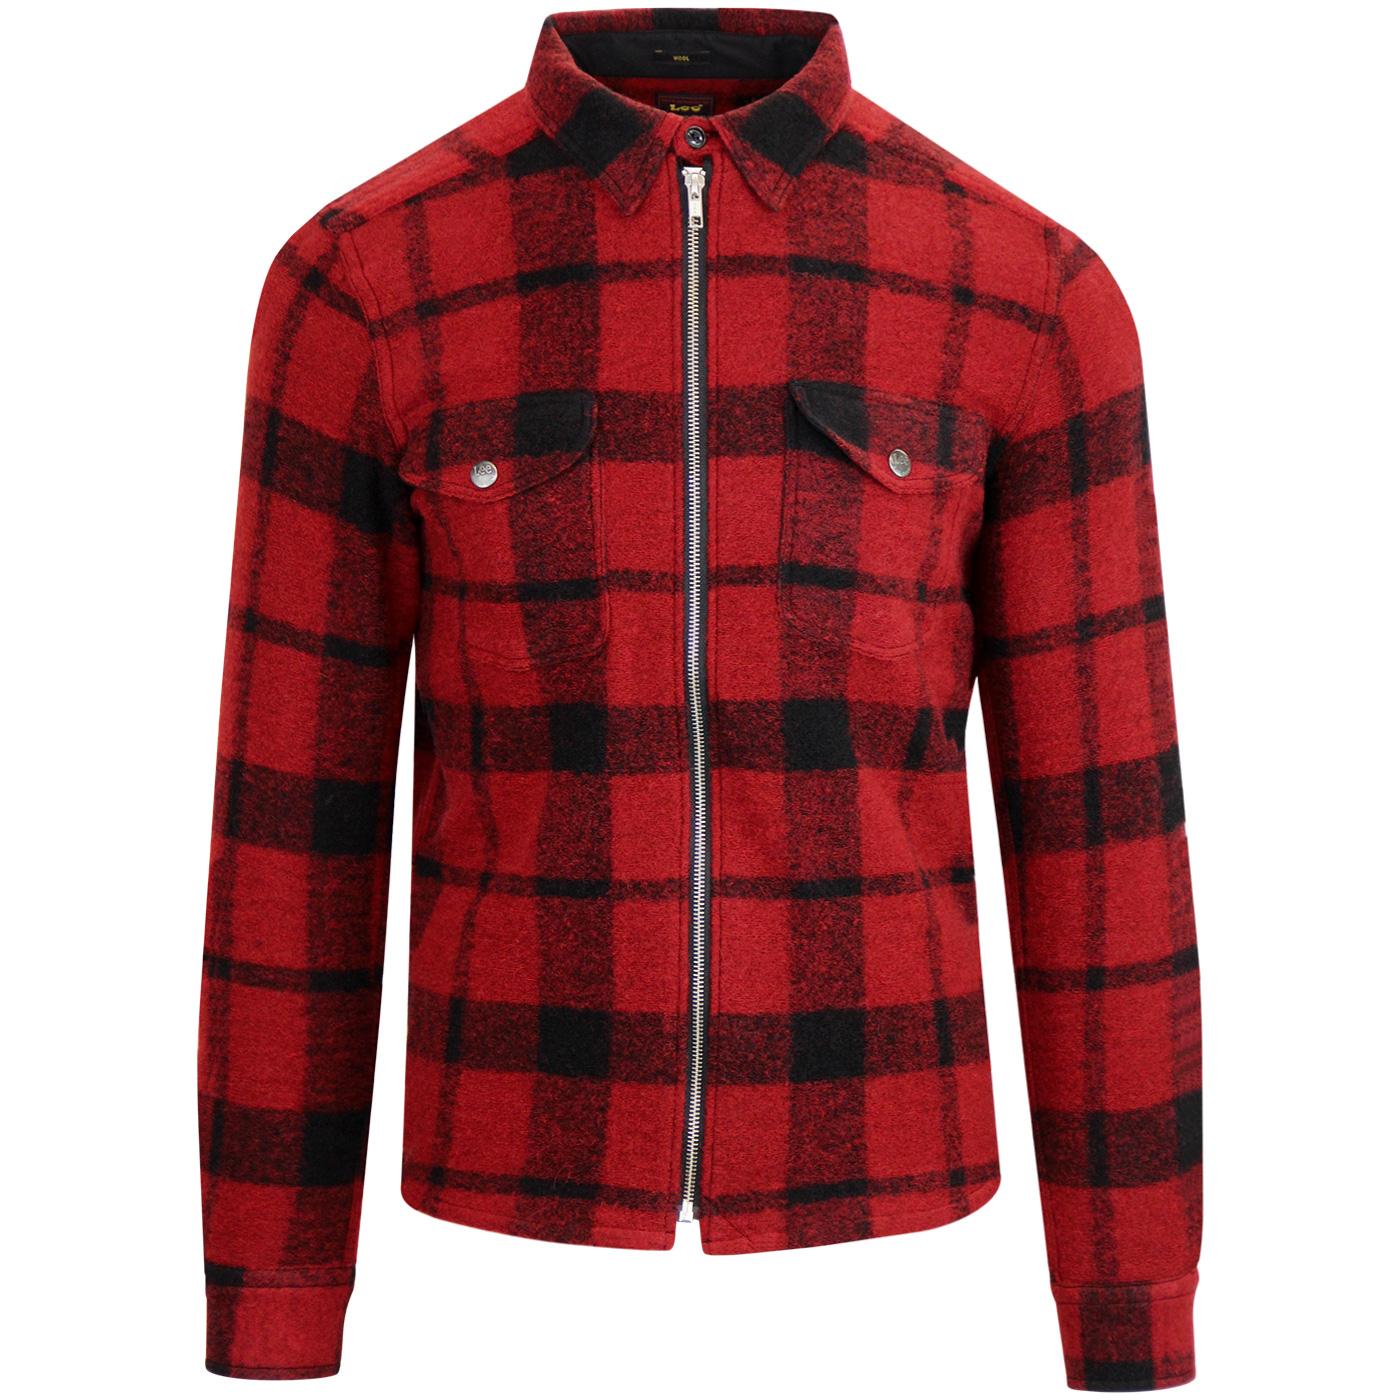 LEE JEANS Men's Retro 50s Wool Zip Overshirt Jacket in Red